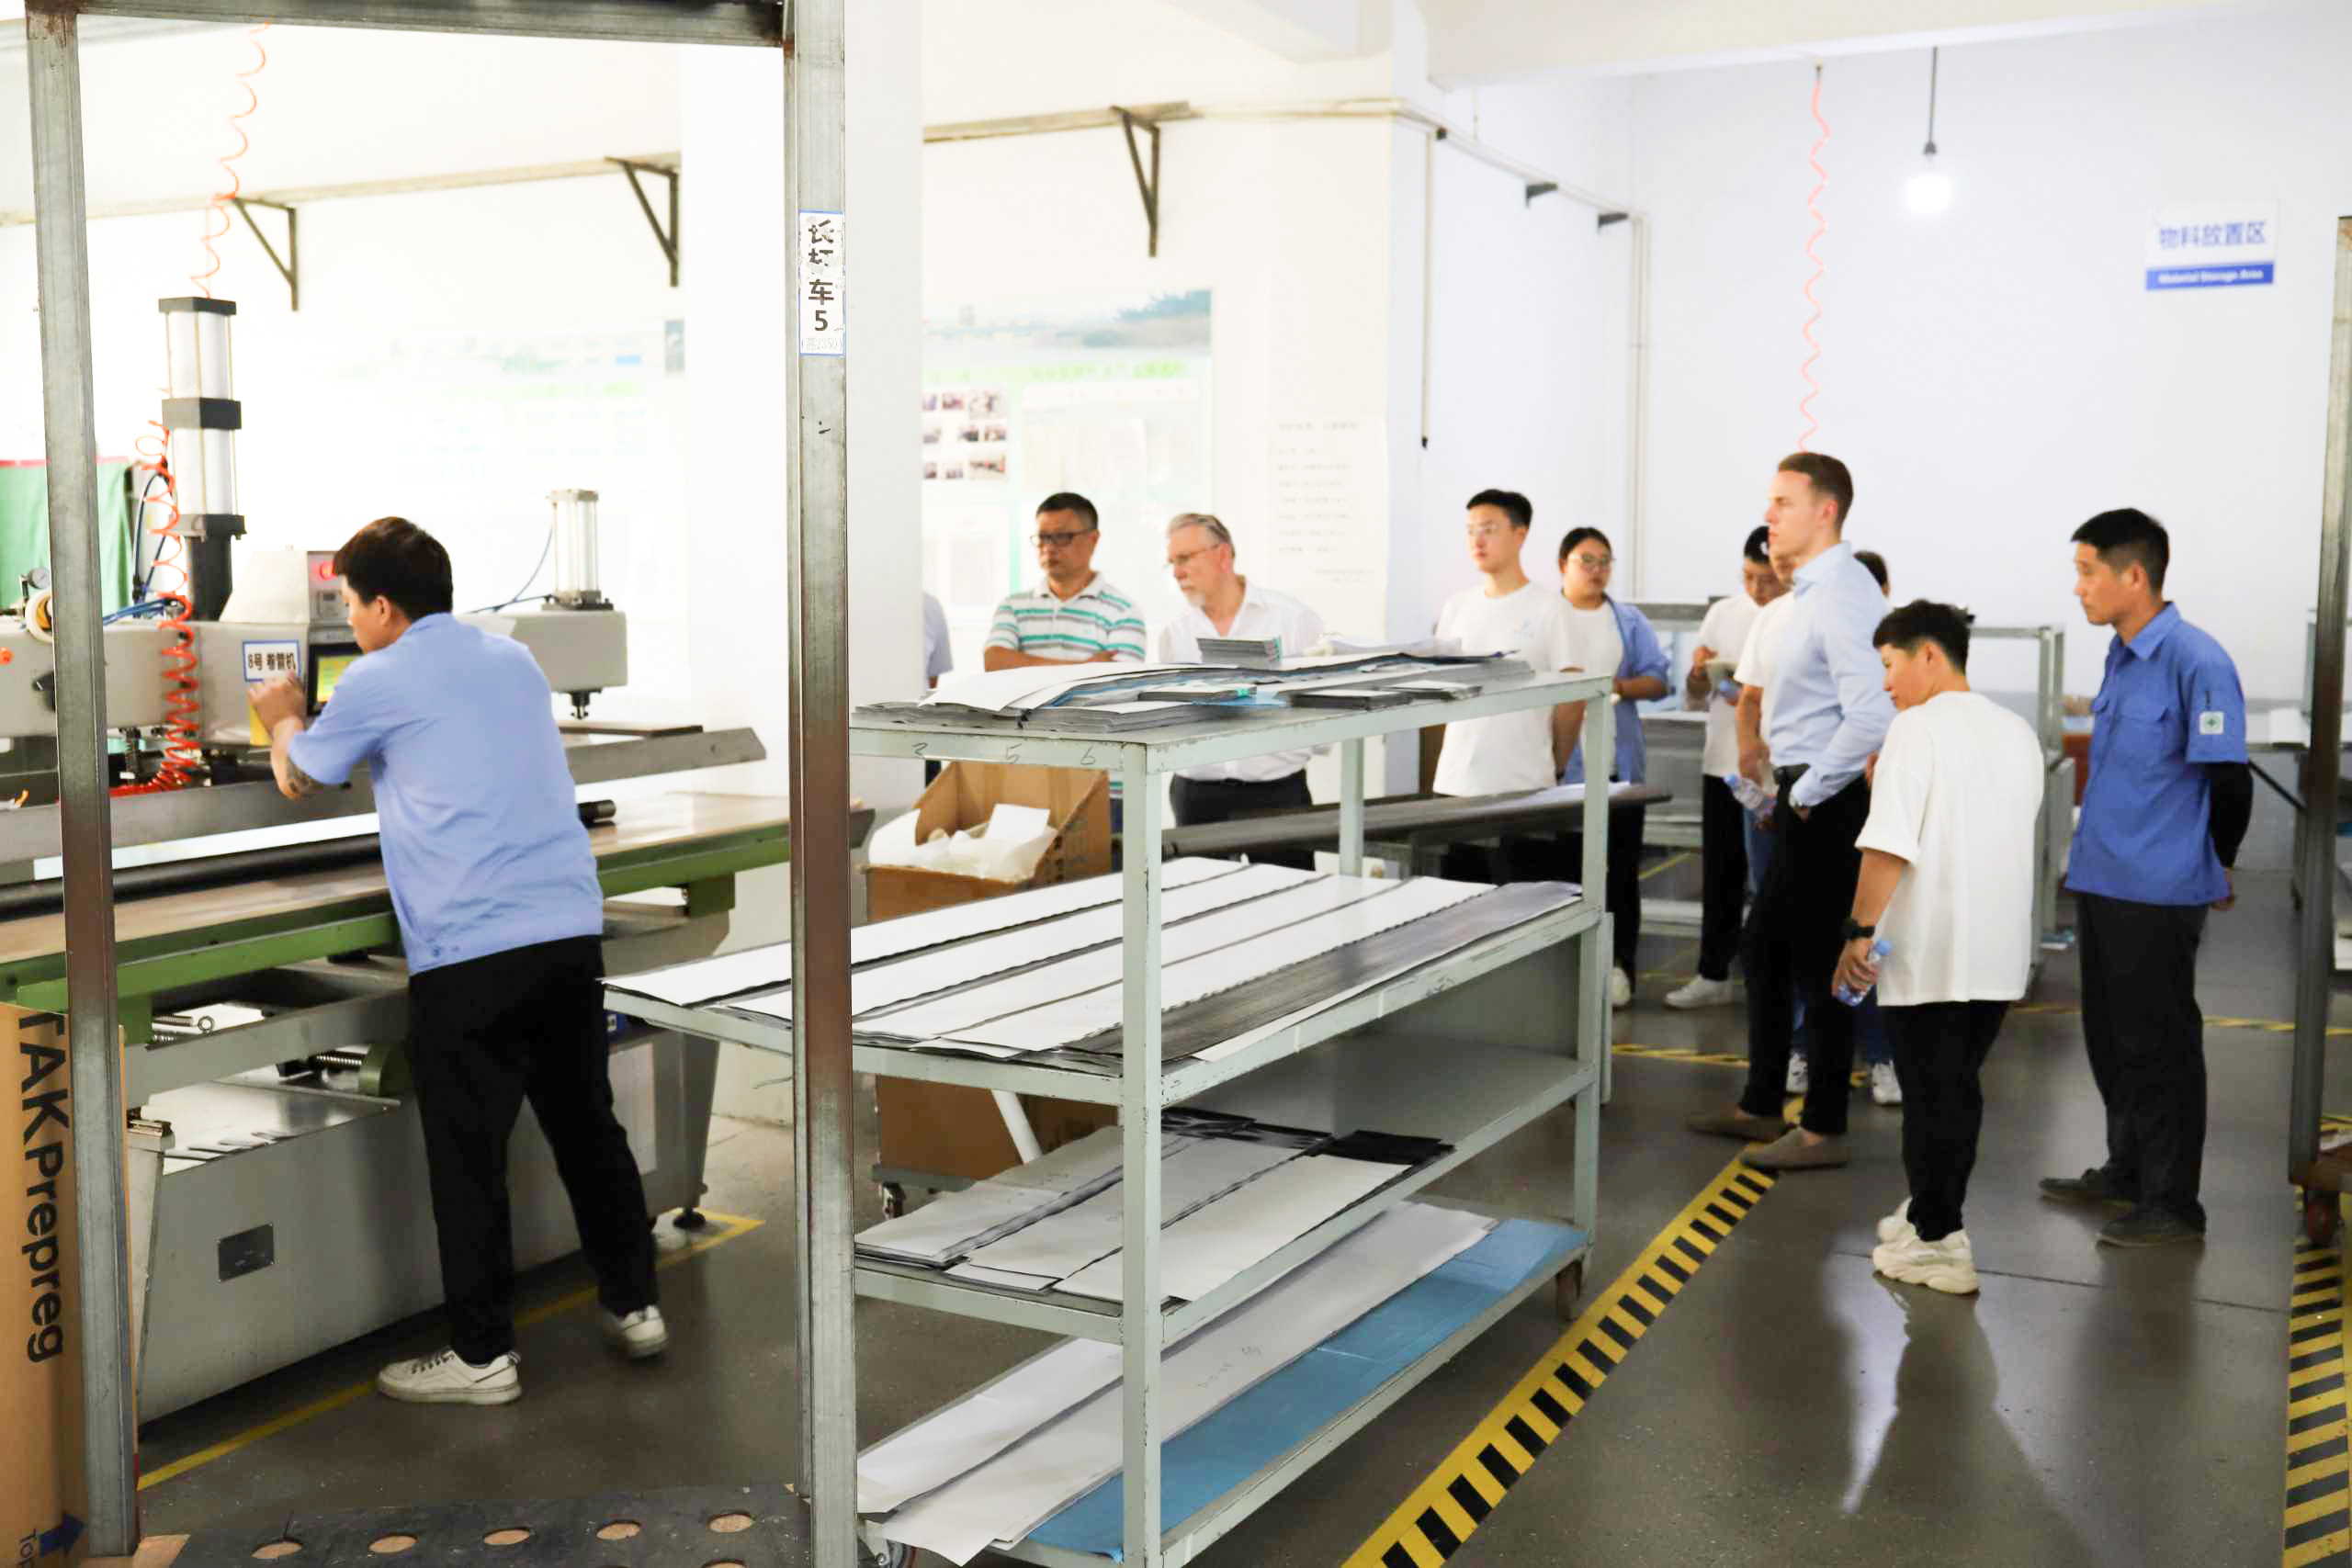 Un partenaire allemand de longue date visite notre usine chinoise pour renforcer ses liens commerciaux